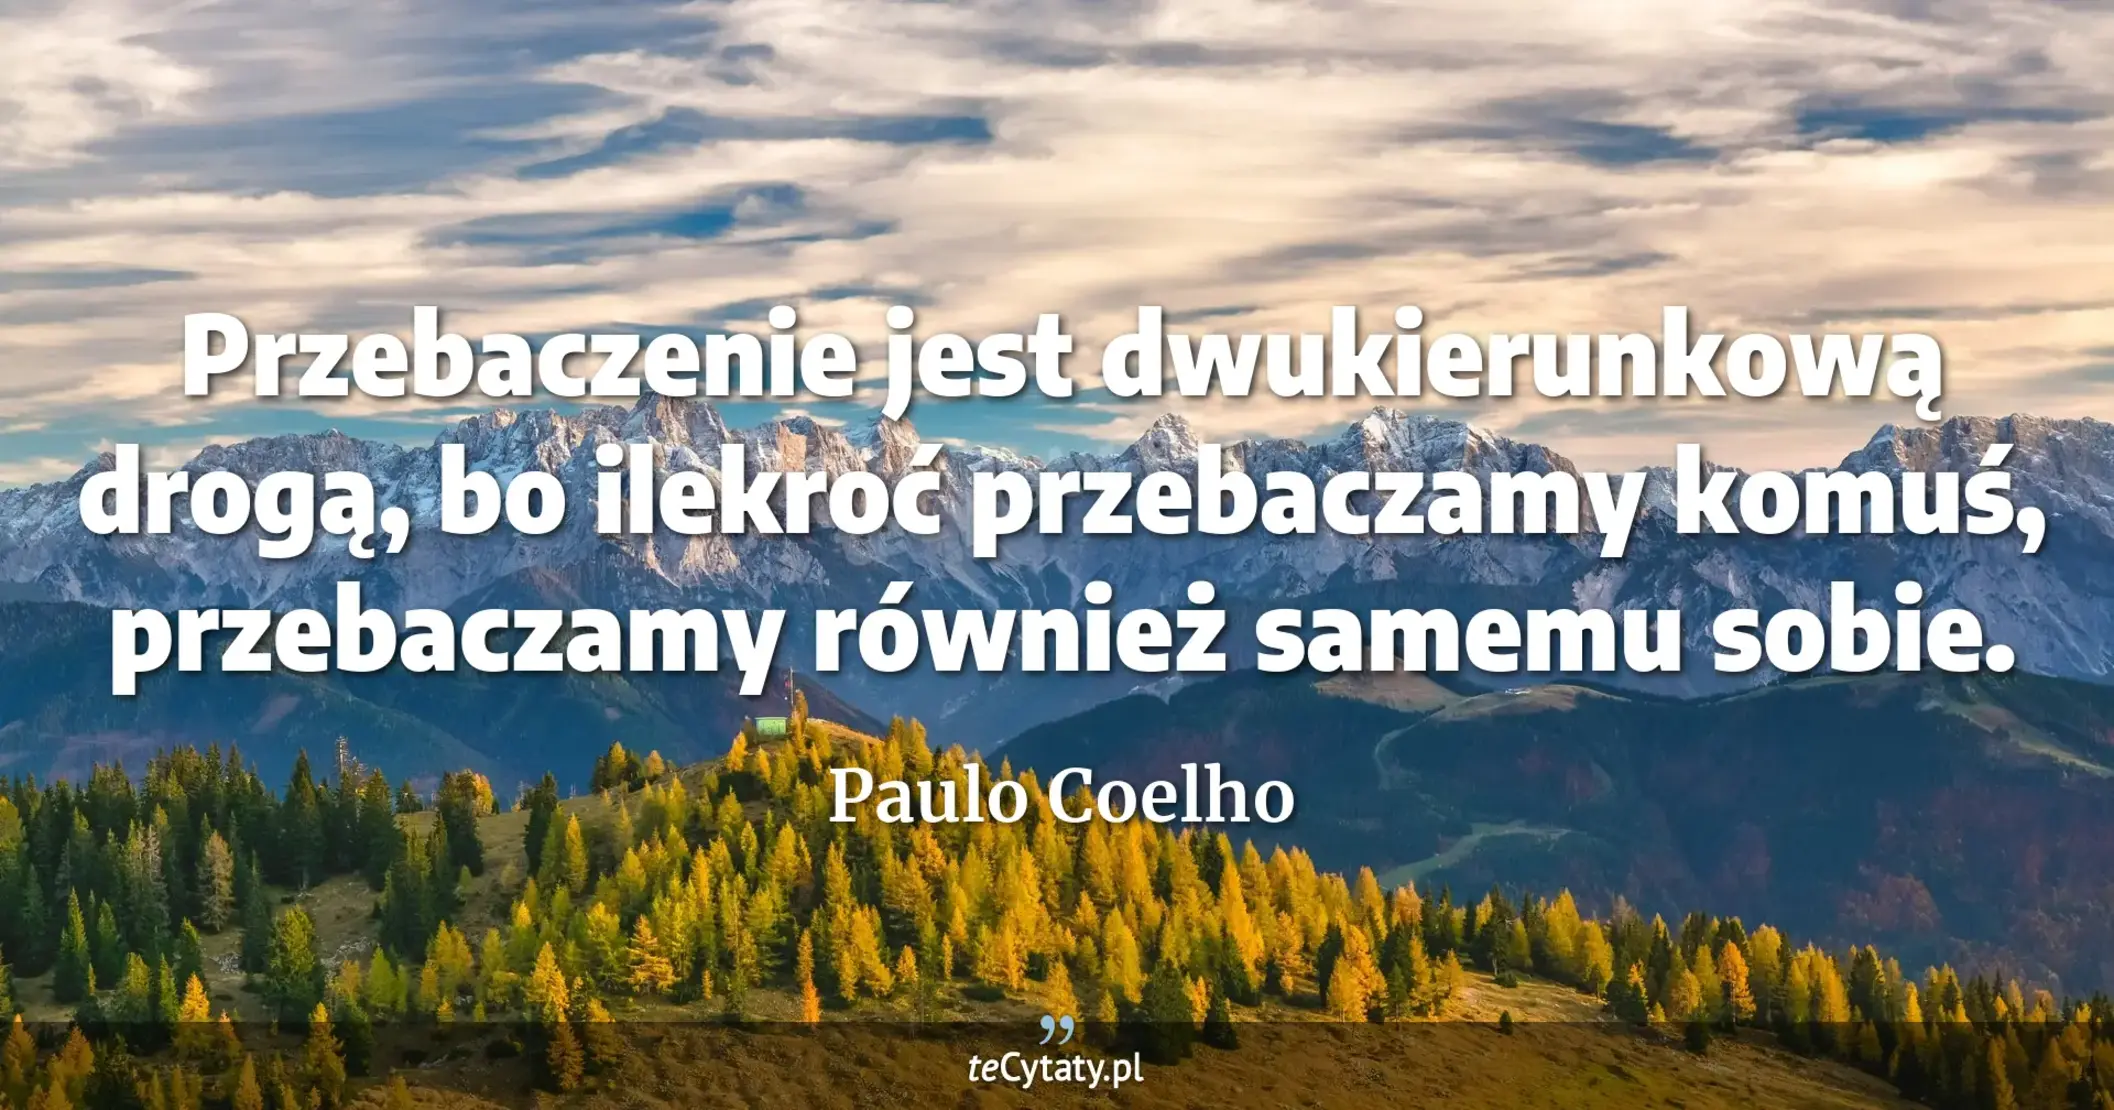 Przebaczenie jest dwukierunkową drogą, bo ilekroć przebaczamy komuś, przebaczamy również samemu sobie. - Paulo Coelho